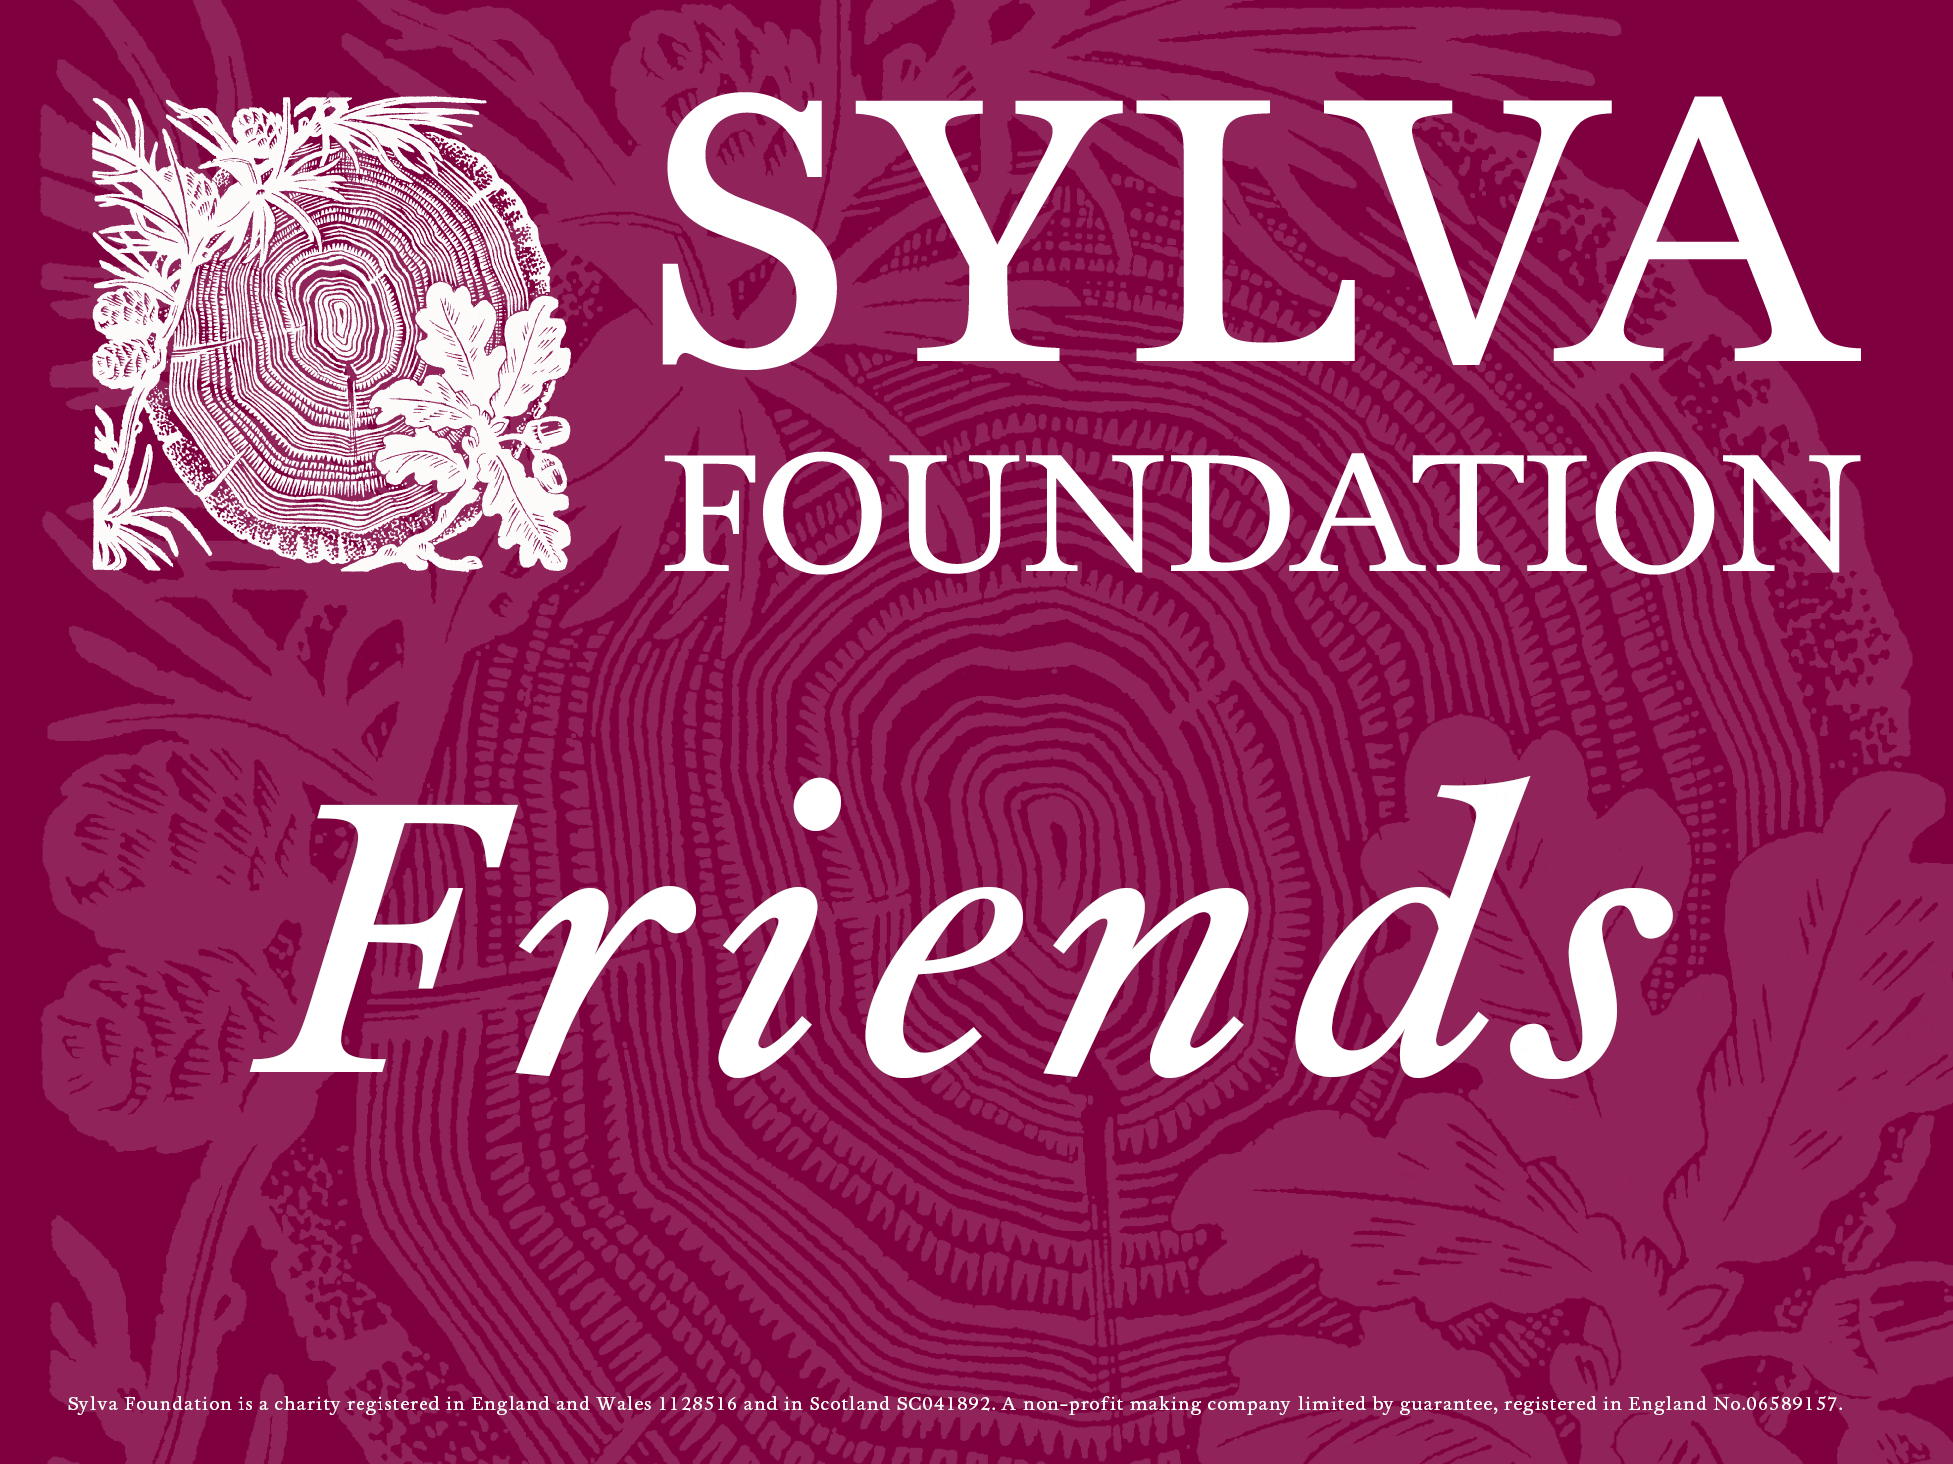 Sylva Friends